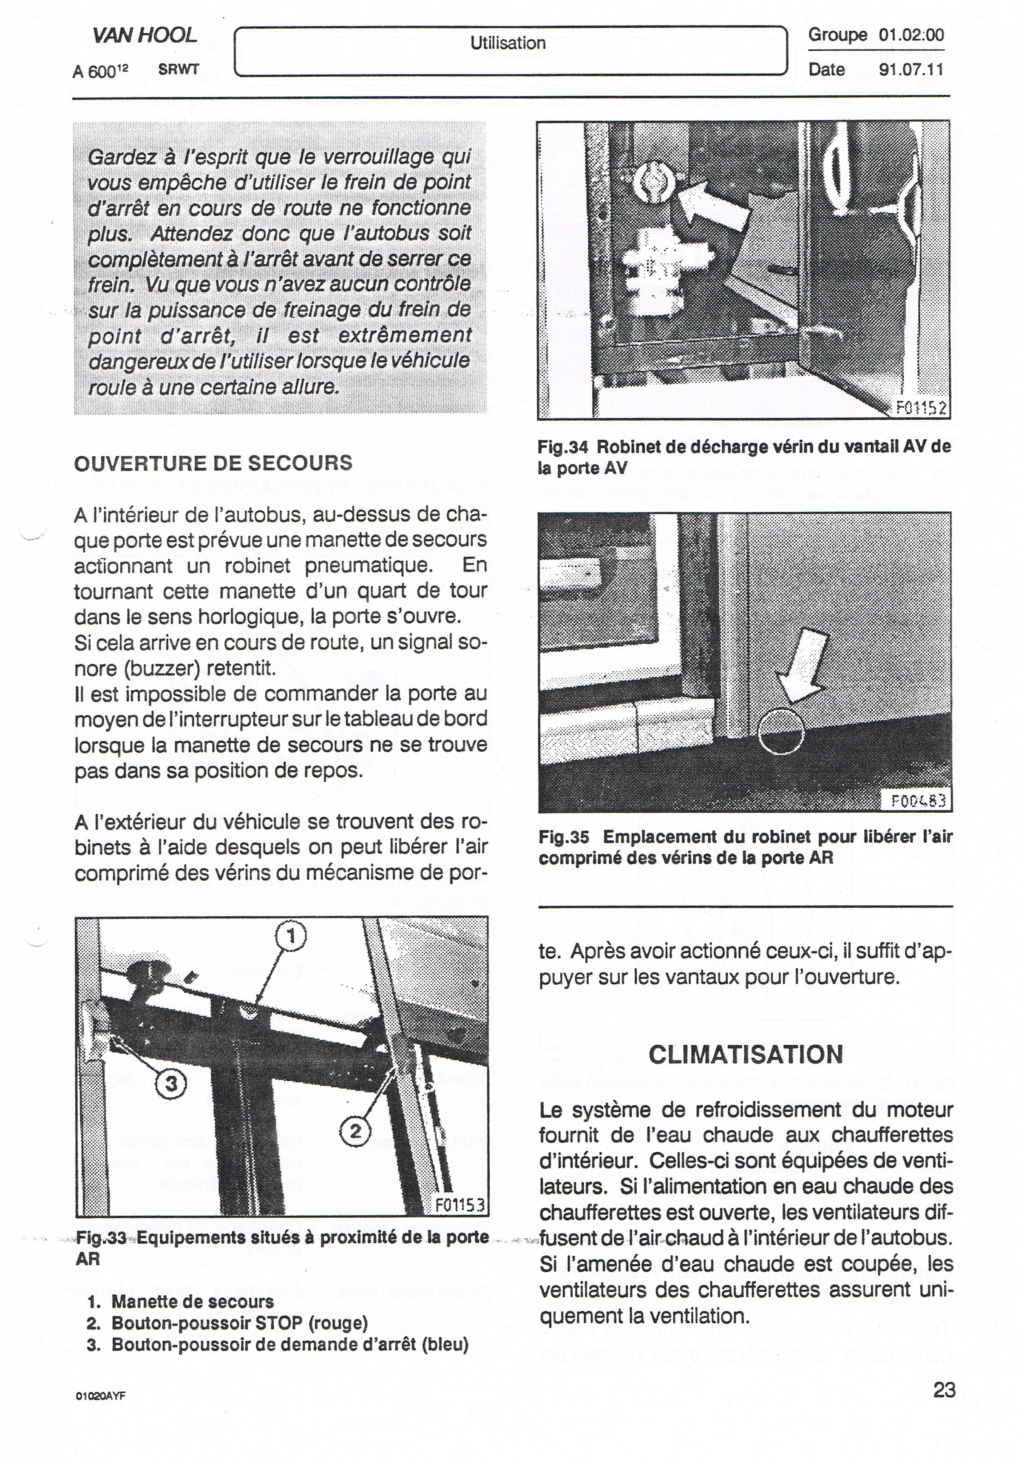 OPERATEUR DE TRANSPORT DE WALLONIE  OTW - Page 3 Ccf23148